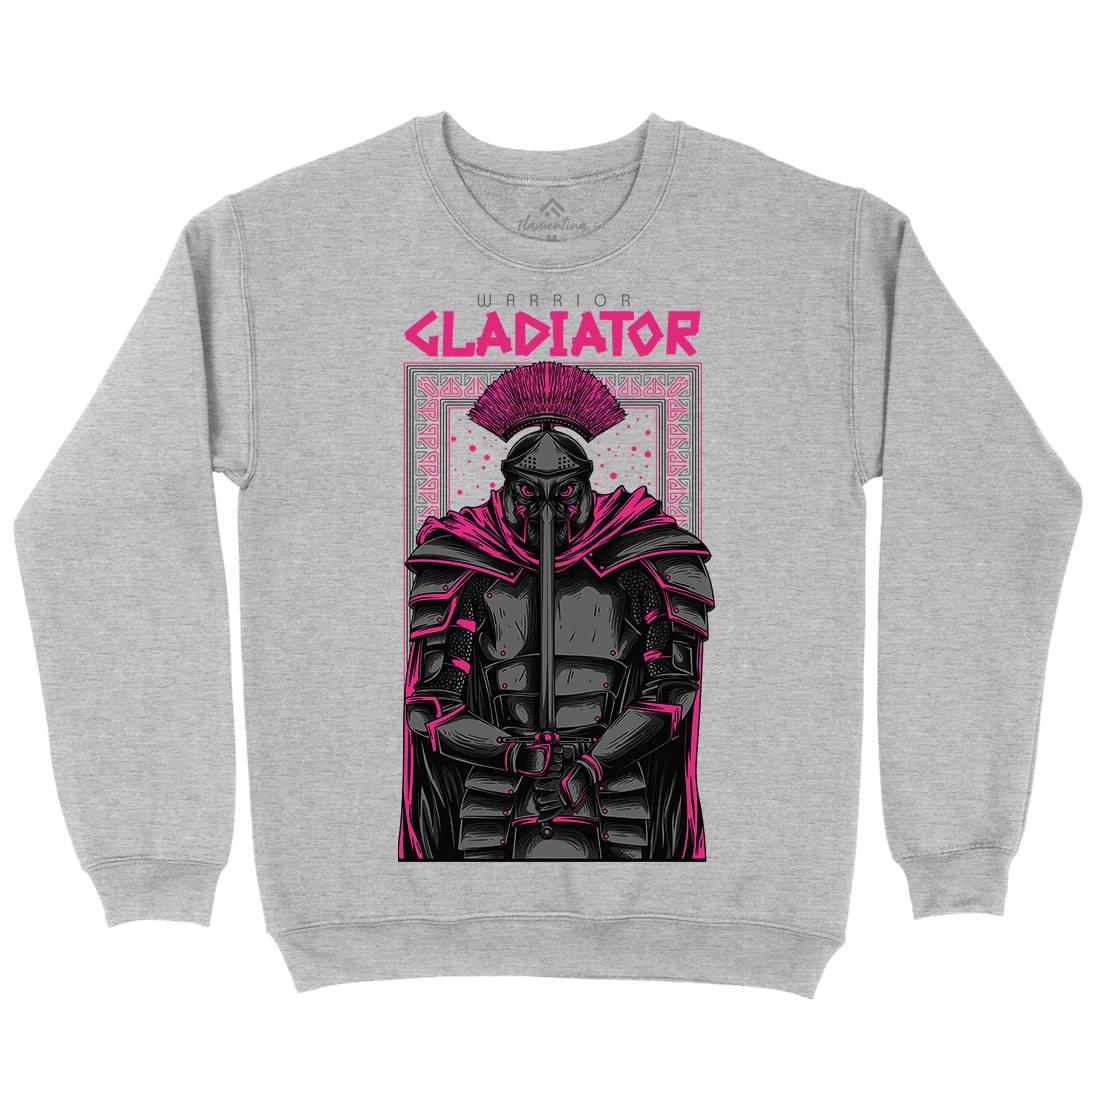 Gladiator Kids Crew Neck Sweatshirt Warriors D794